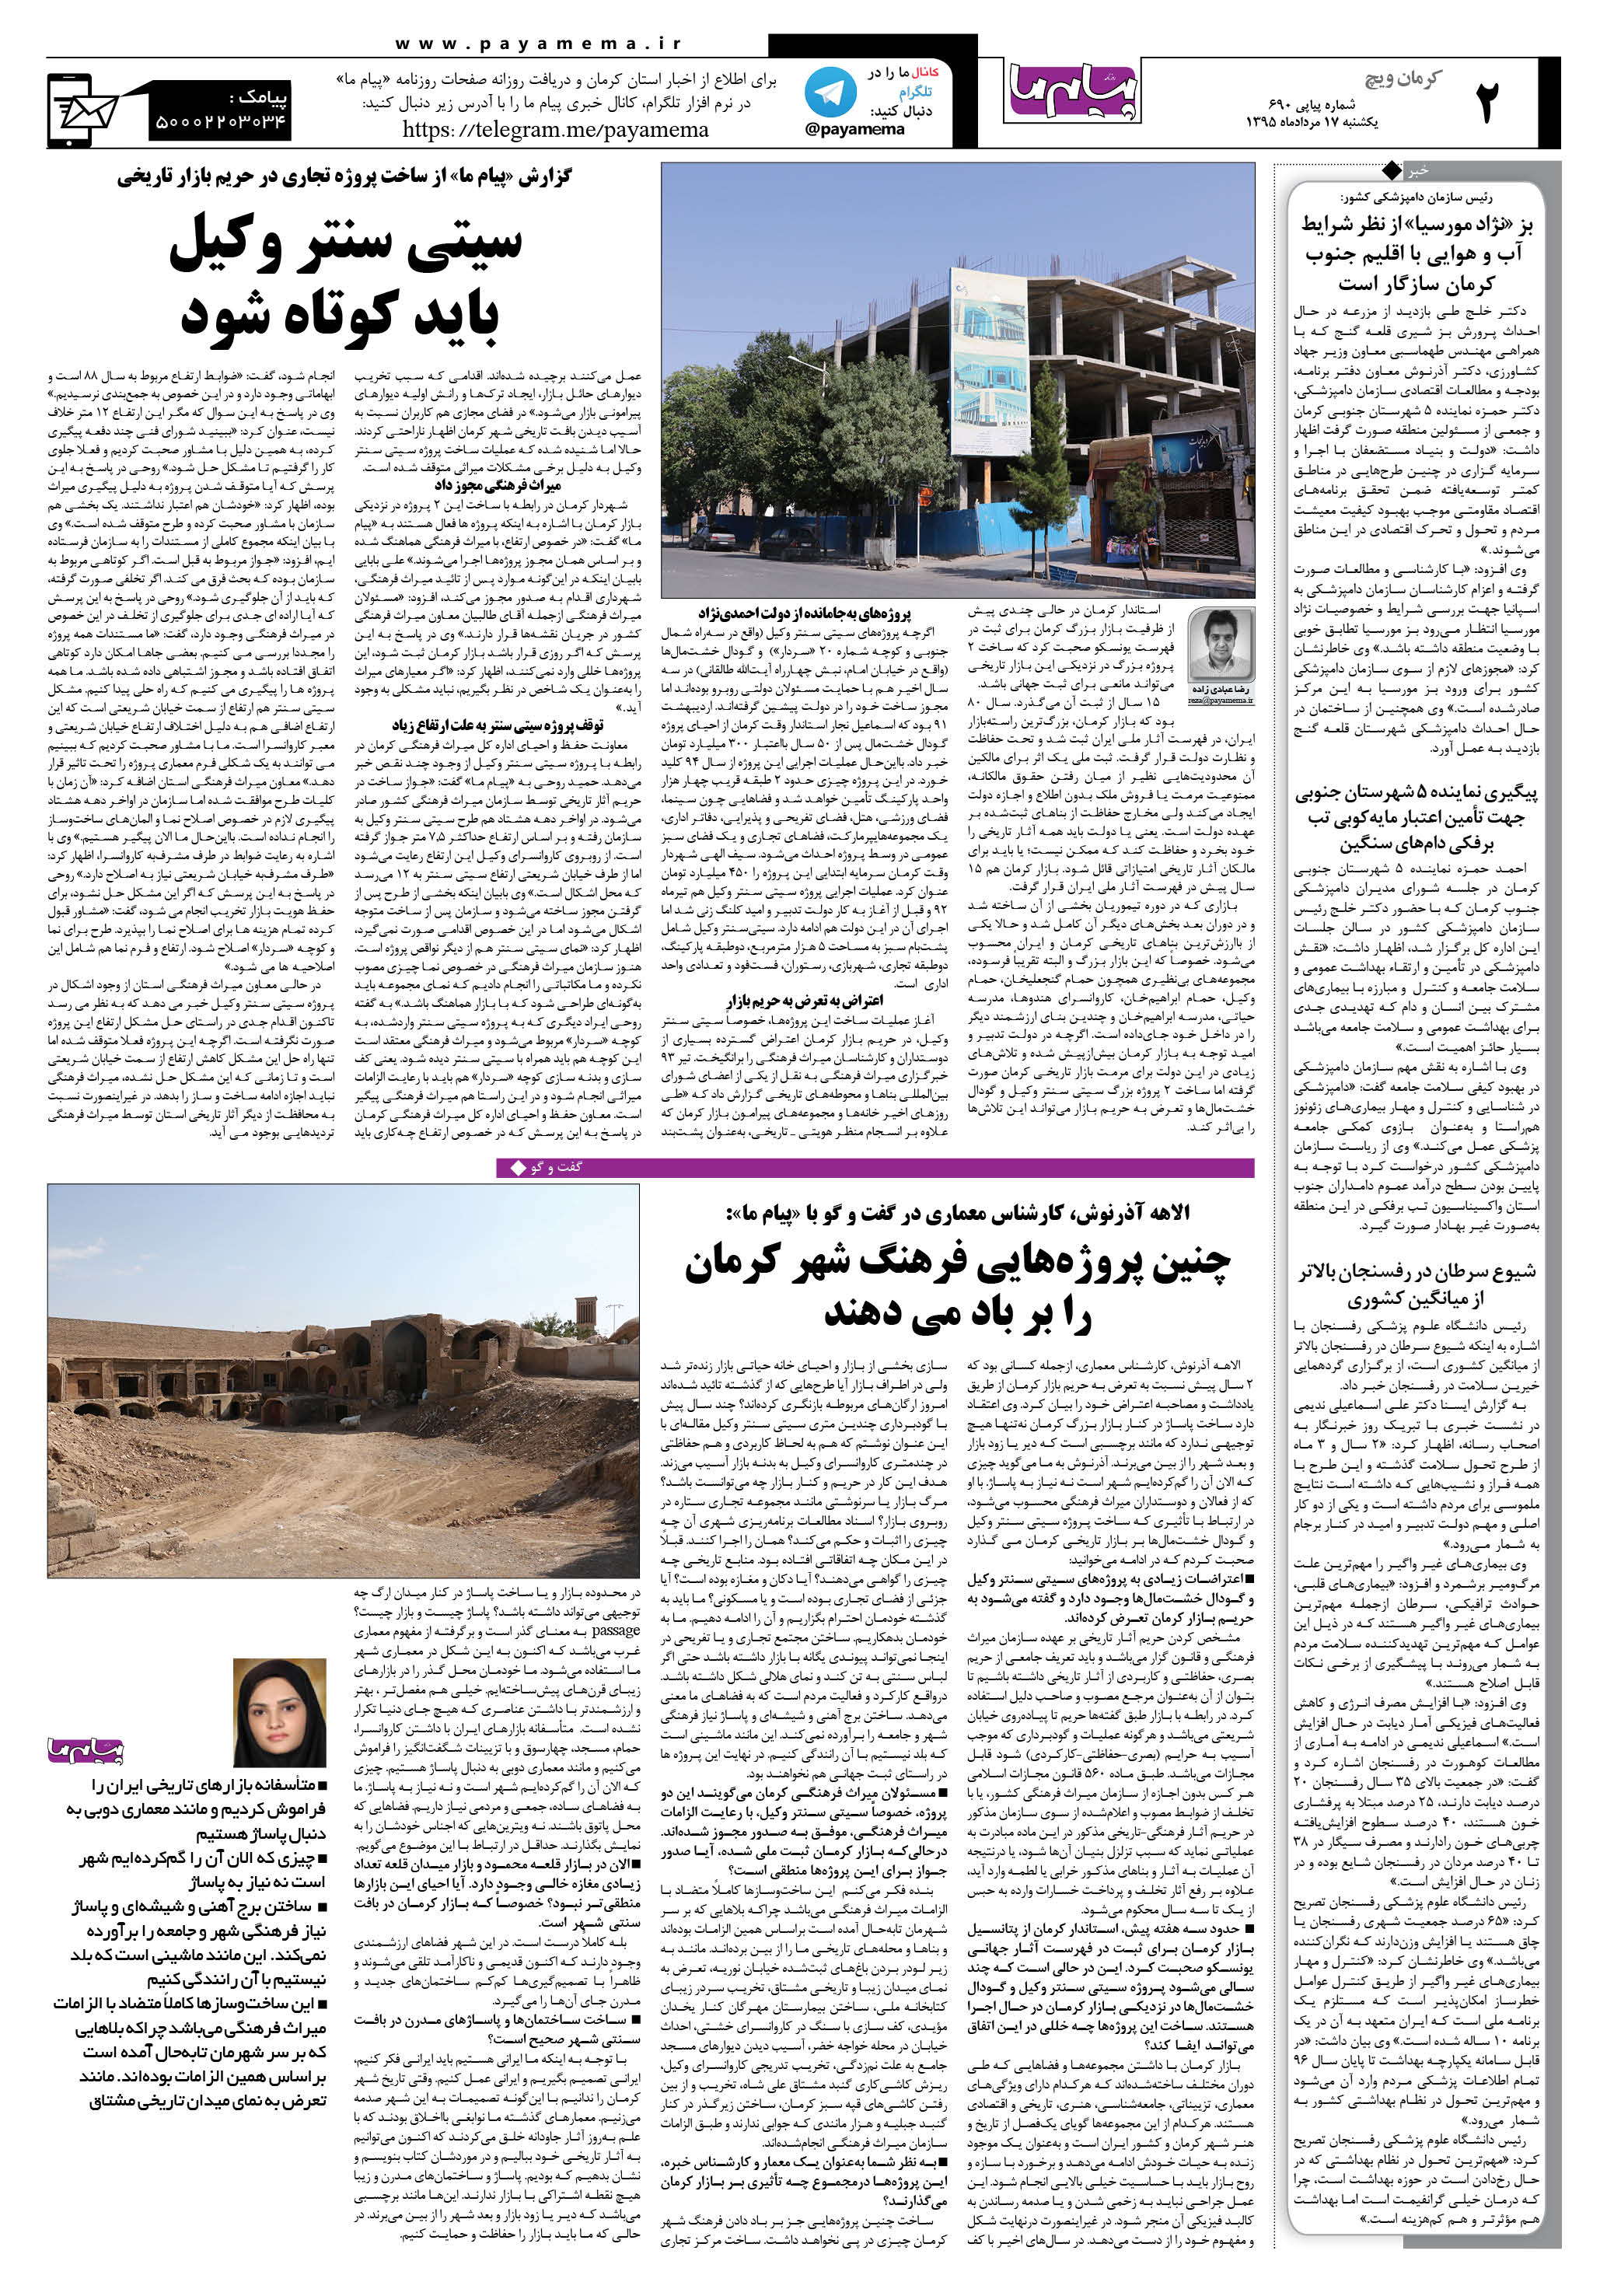 صفحه کرمان ویج شماره 690 روزنامه پیام ما